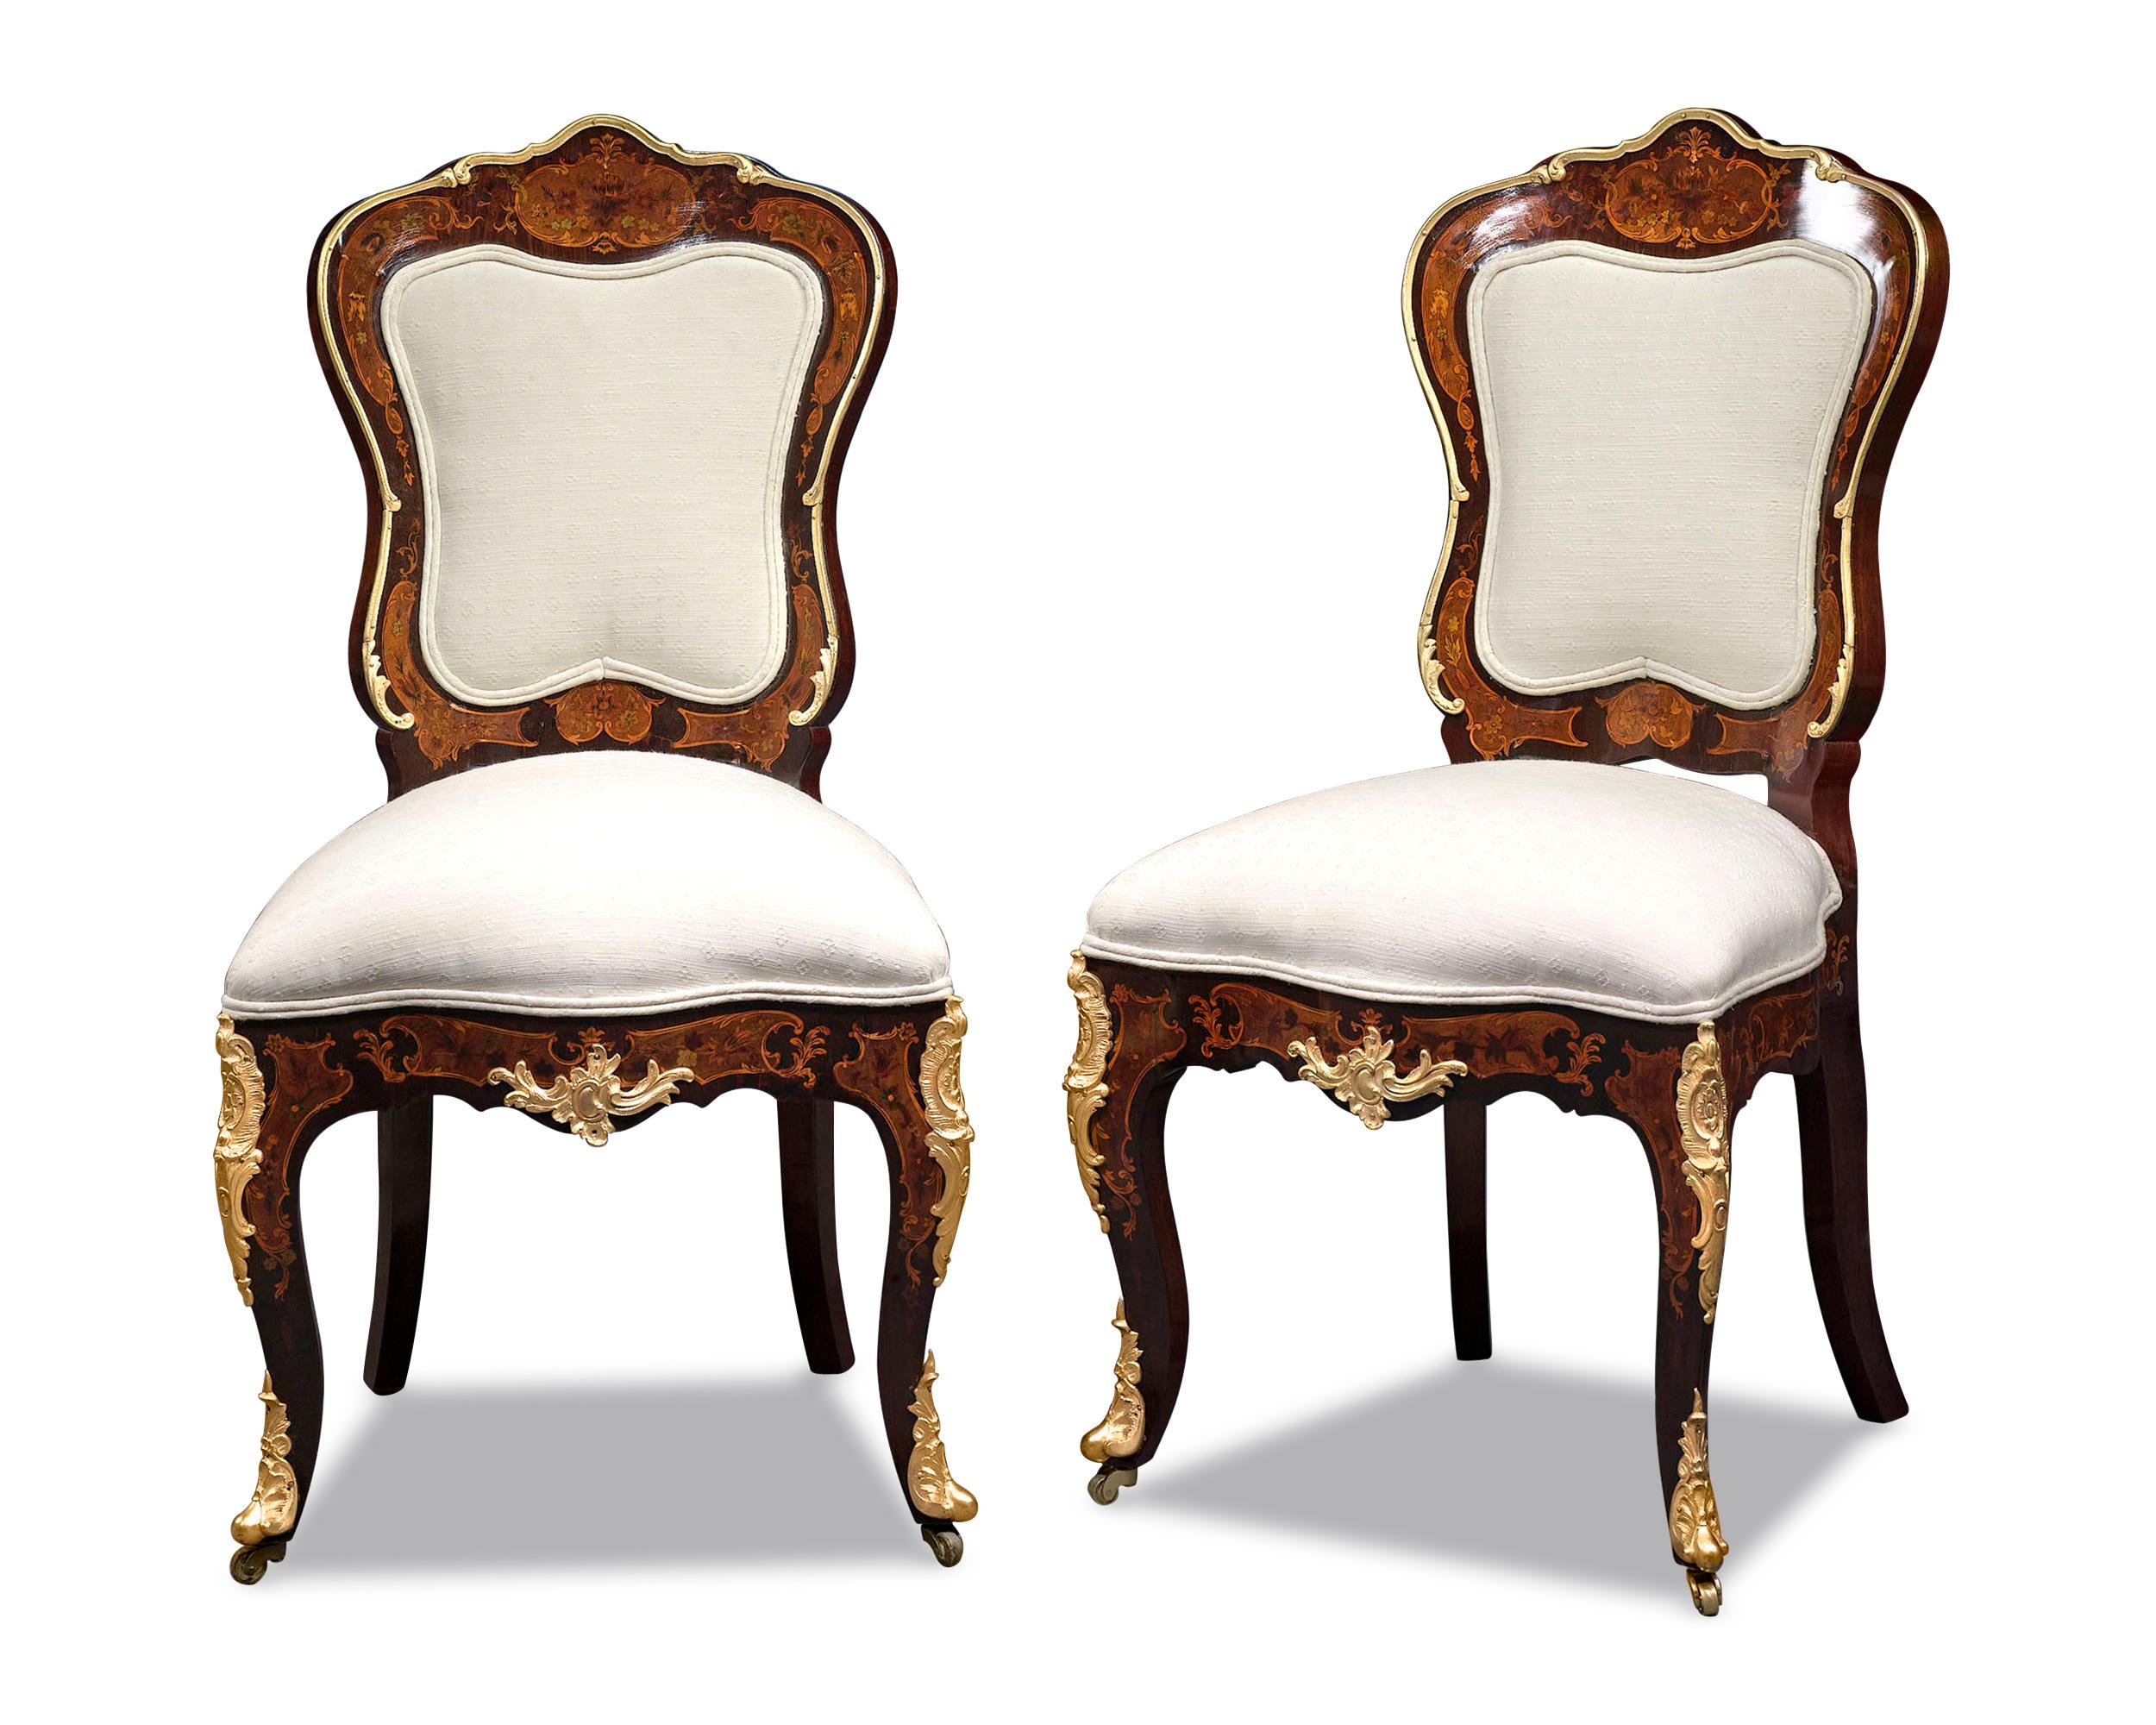 Das elegante Paar Beistellstühle im Louis XV-Stil ist von außergewöhnlicher Kunstfertigkeit. Anmutige und feminine Linien prägen dieses ausgewogene Design, von den geschwungenen Rückenlehnen und Sitzen bis hin zu den sanft geschwungenen